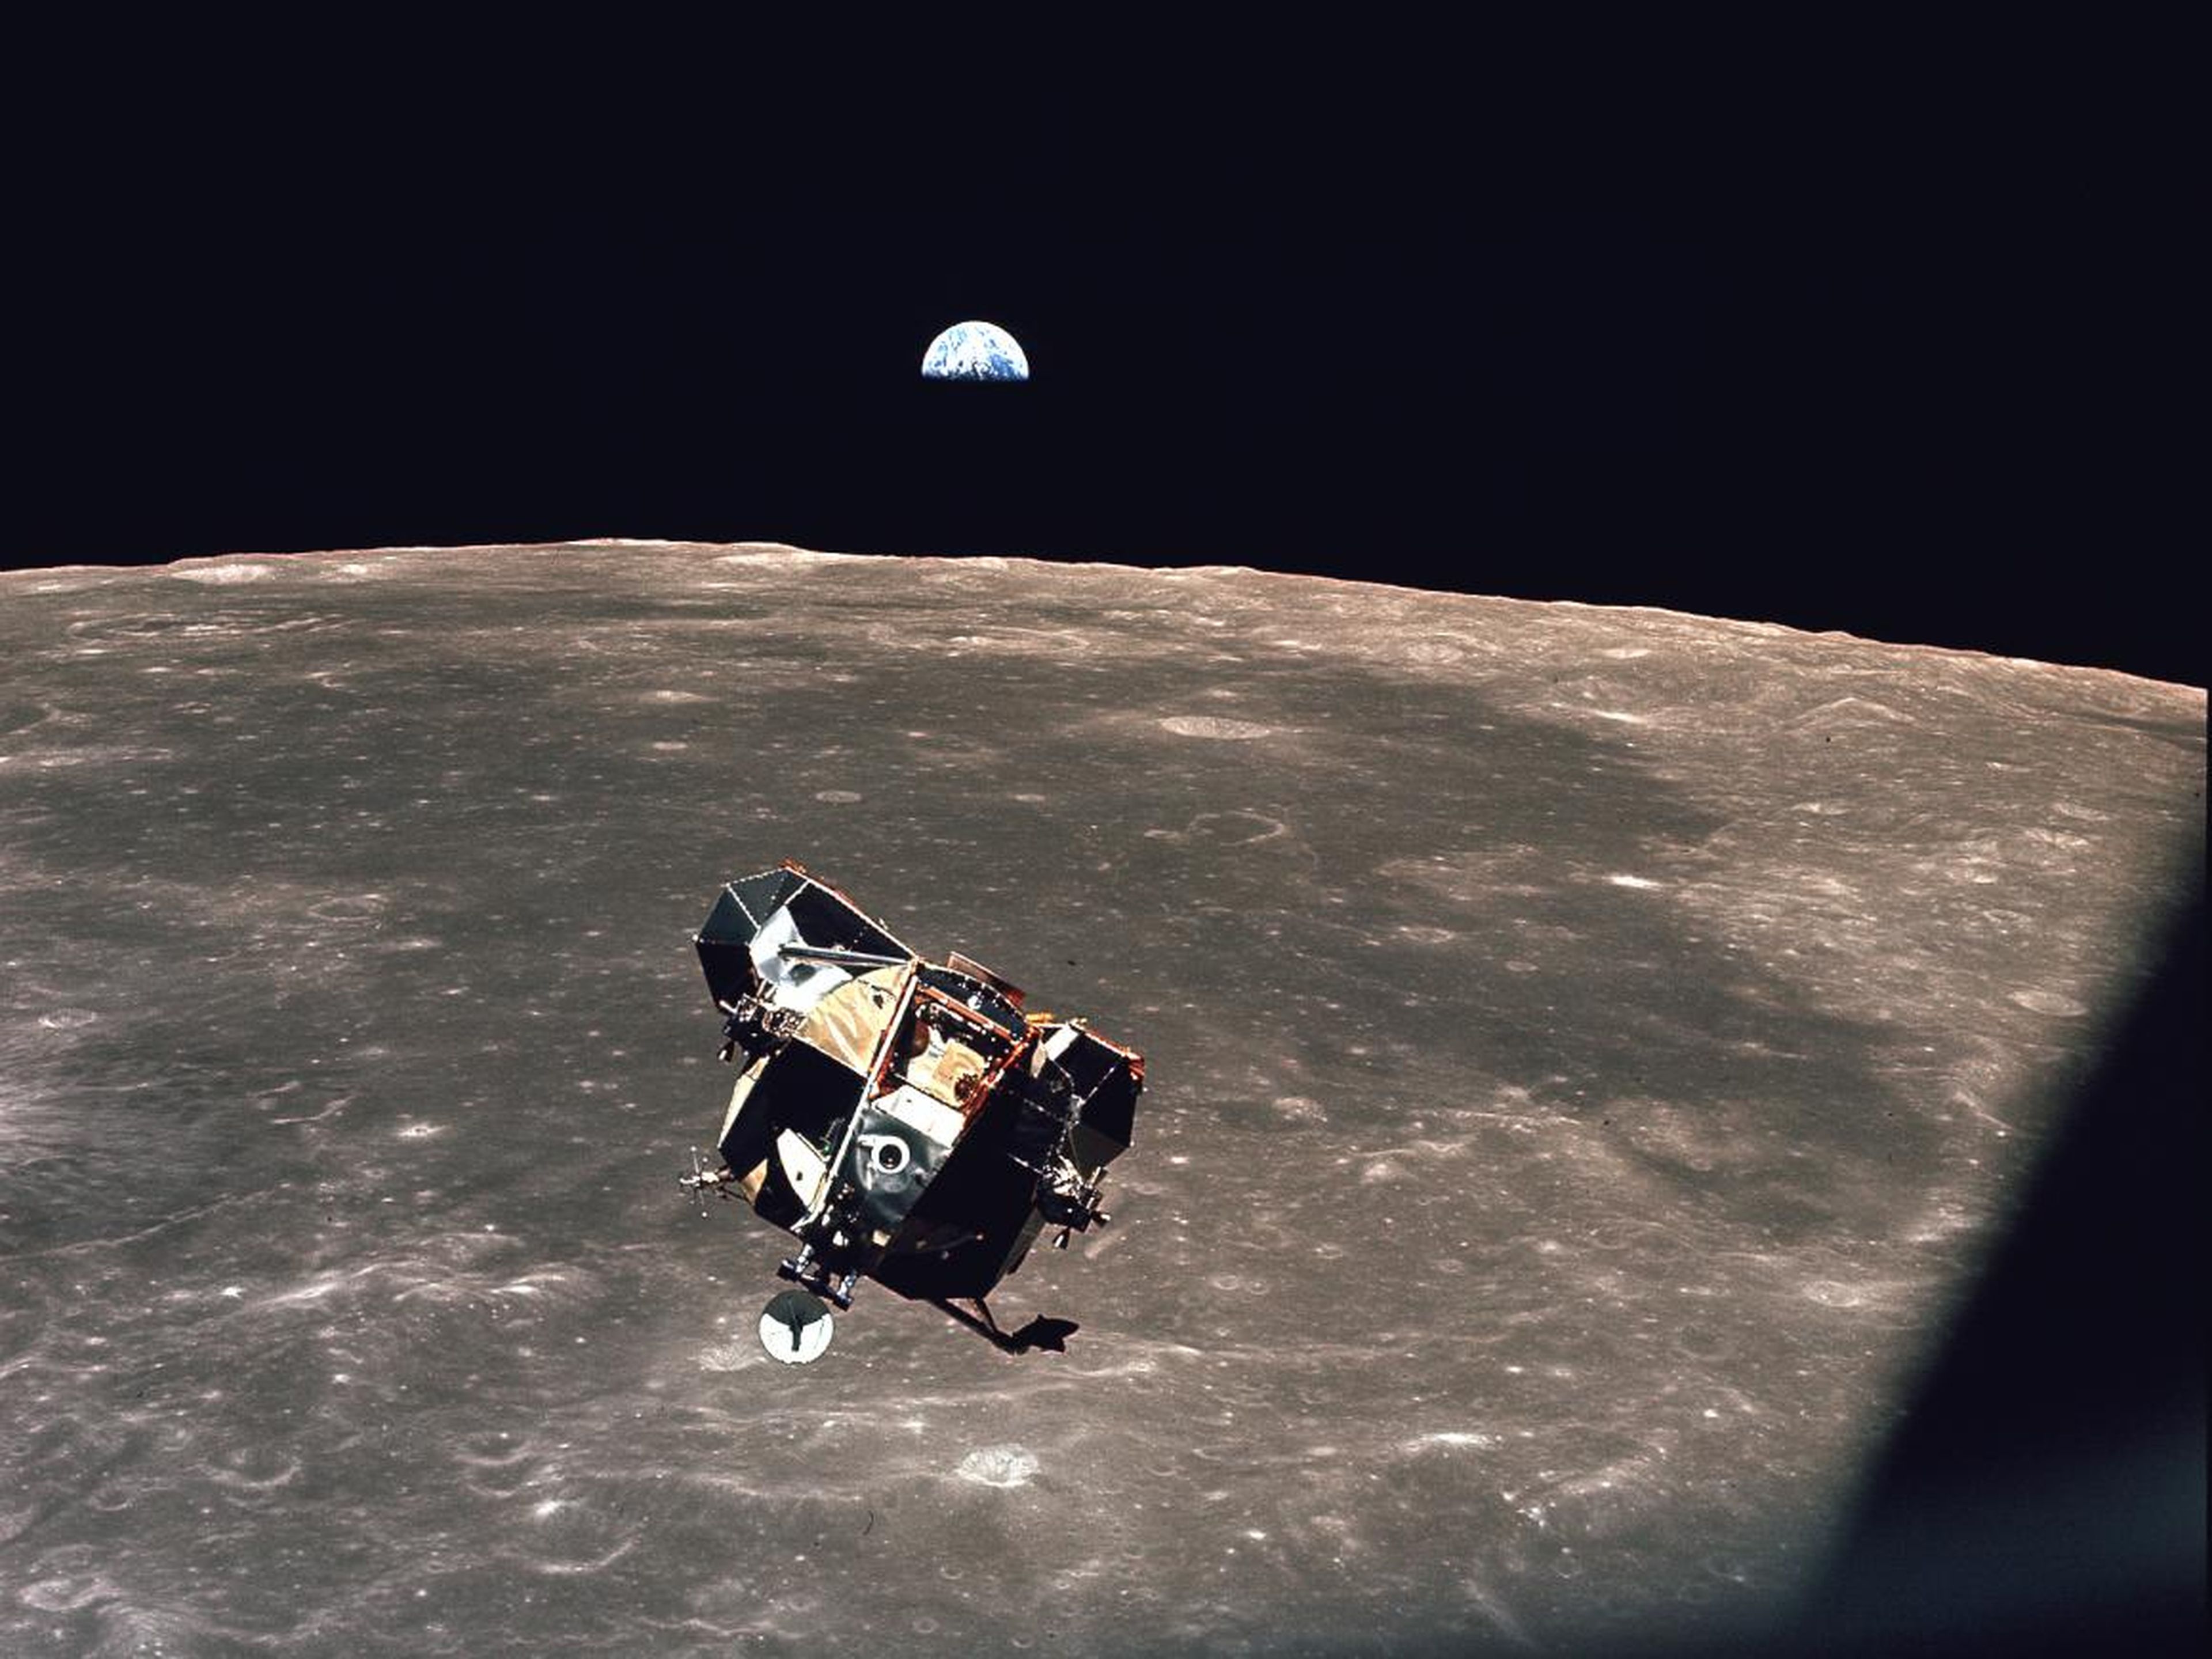 El módulo lunar "Eagle" del Apolo 11 cuando regresaba de la luna el 21 de julio de 1969.